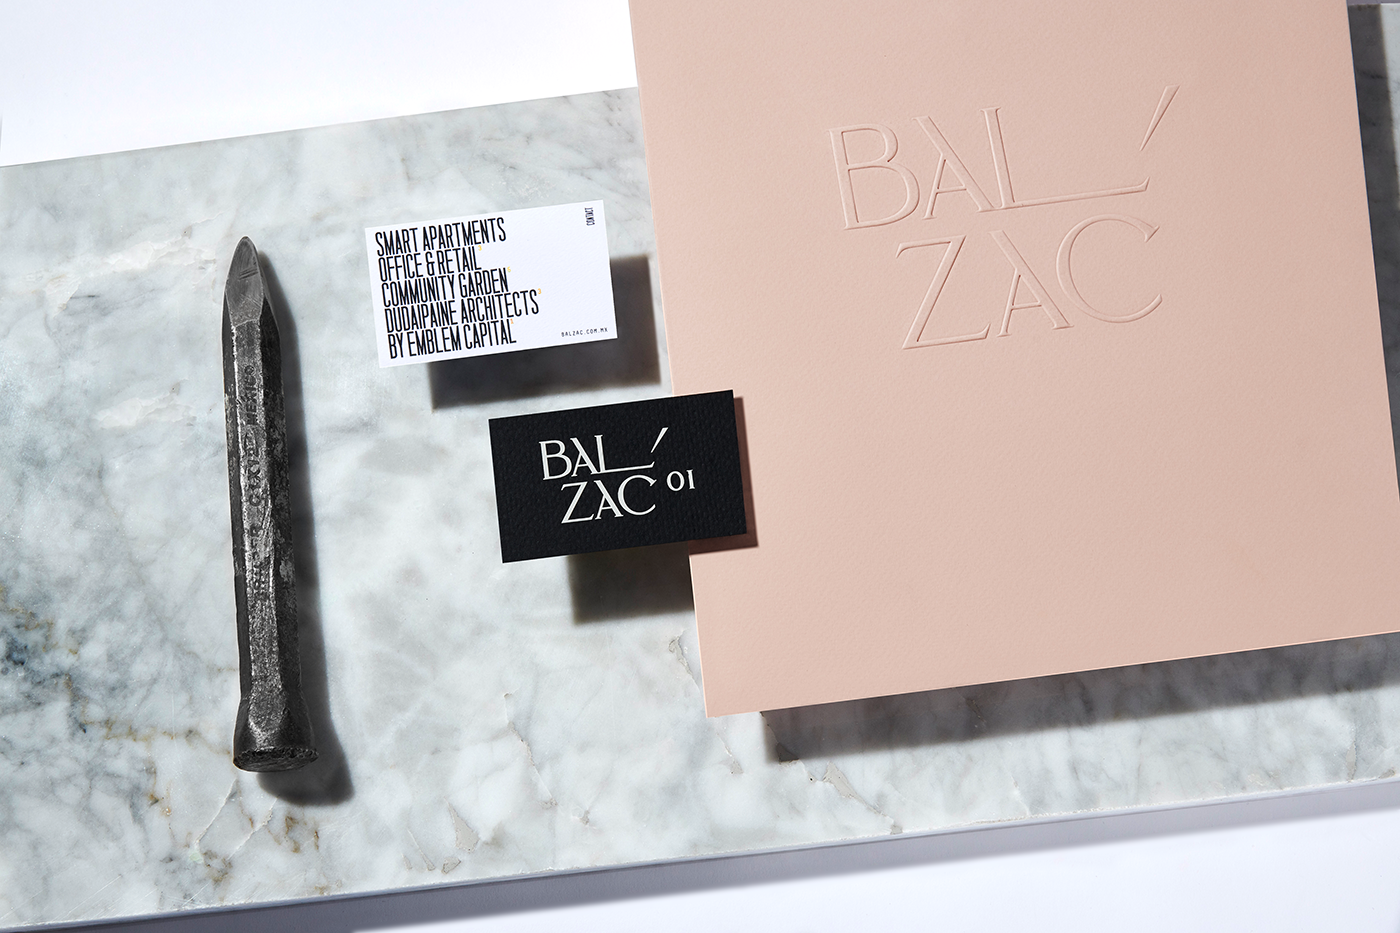 balzac emblemcapital realstate anagramastudio rodin Logotype engraving highend Technology chisel